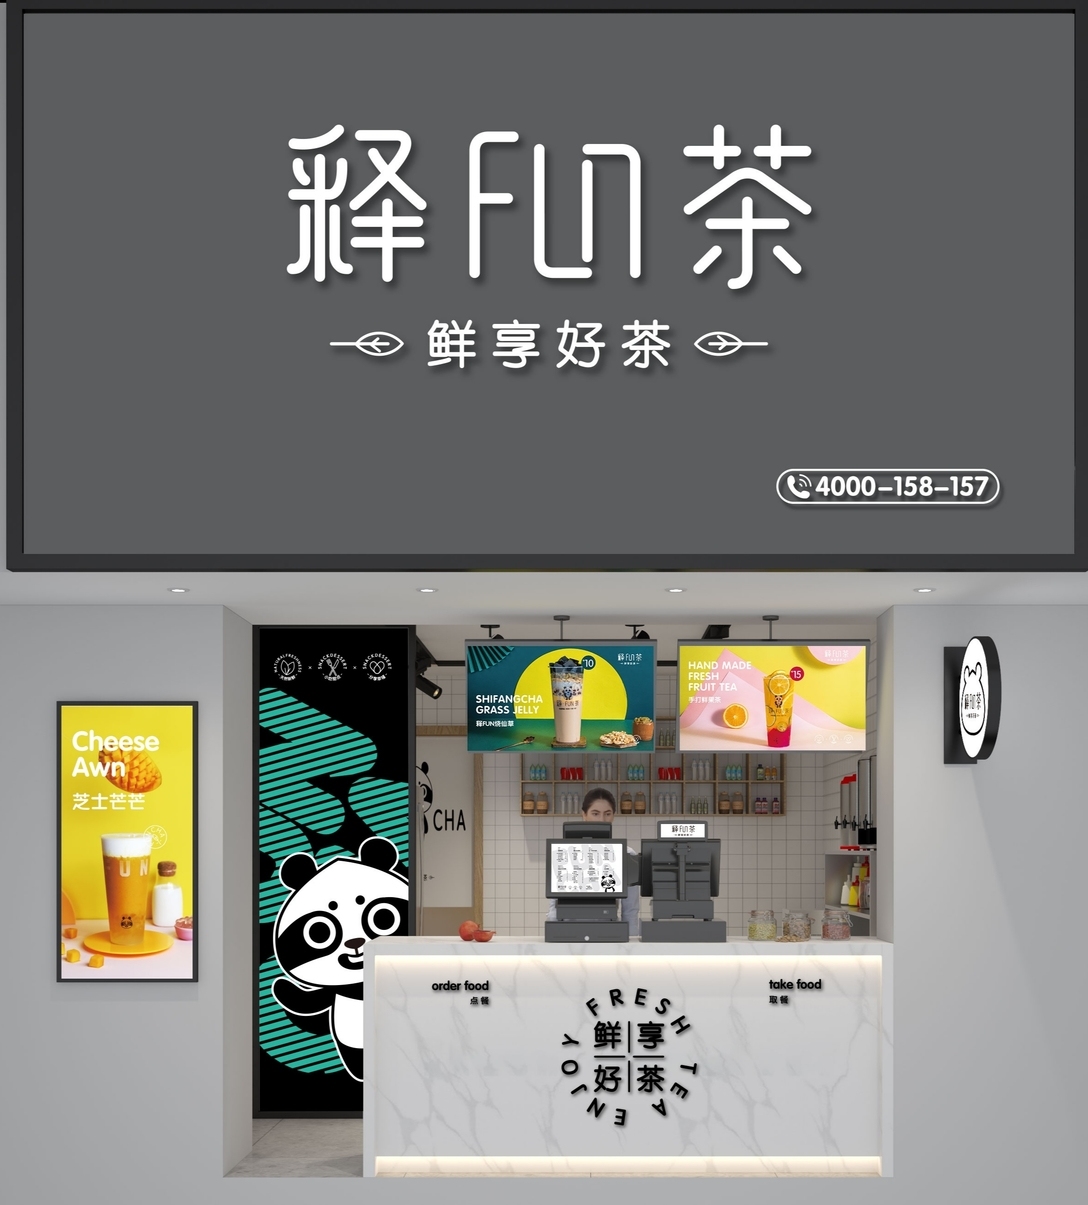 释FUN茶奶茶品牌形象设计图4